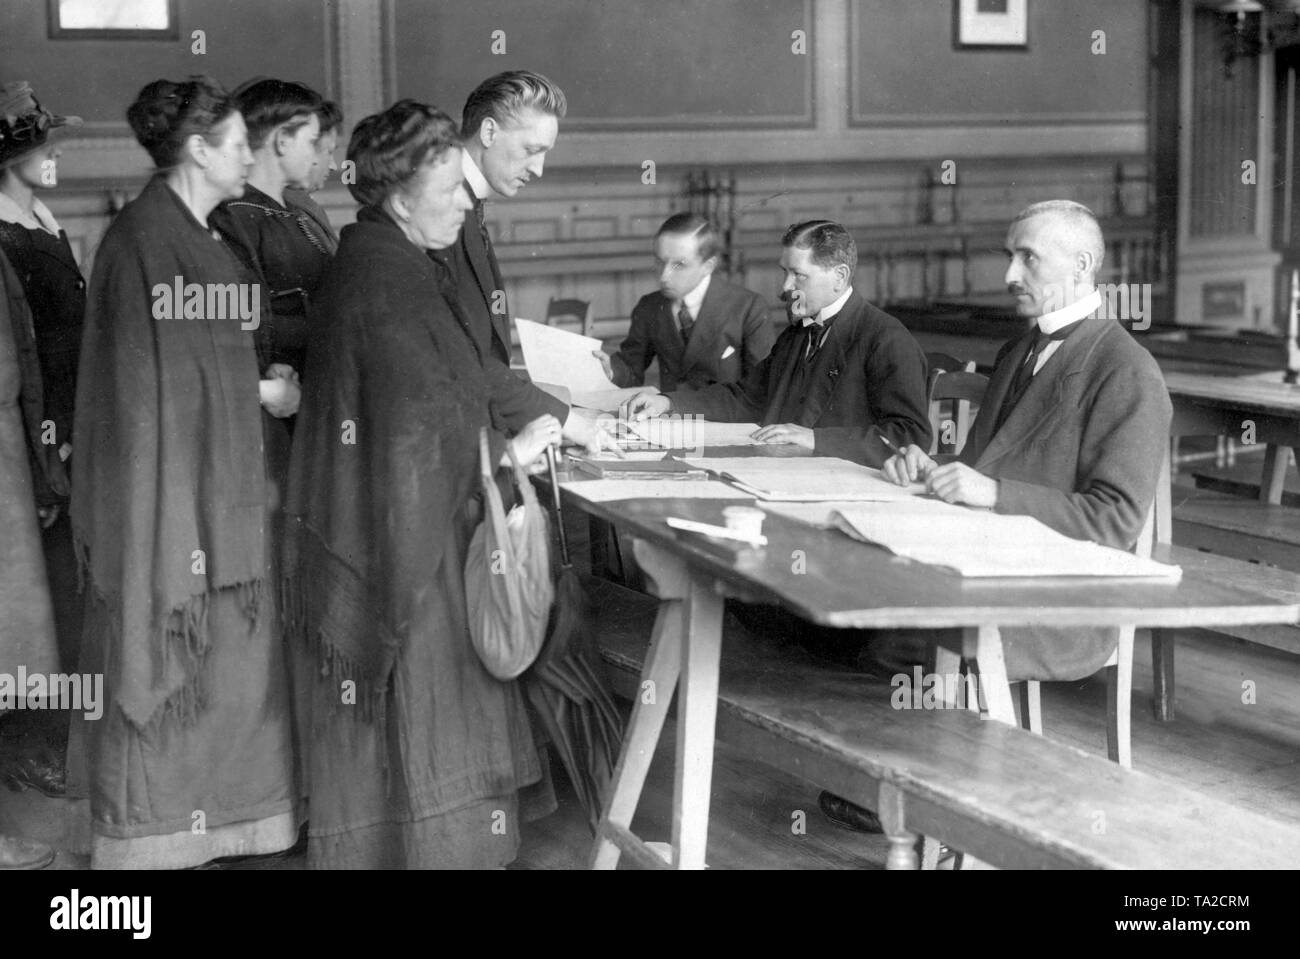 Wahllokal in Berlin, in denen zahlreiche Frauen als Wählerinnen in den Abstimmungslisten registriert sind. Zum ersten Mal in der deutschen Geschichte, hatten Frauen das volle aktive und passive Wahlrecht recht, hier bei den Wahlen zur Nationalversammlung am 19.1.1919. Stockfoto